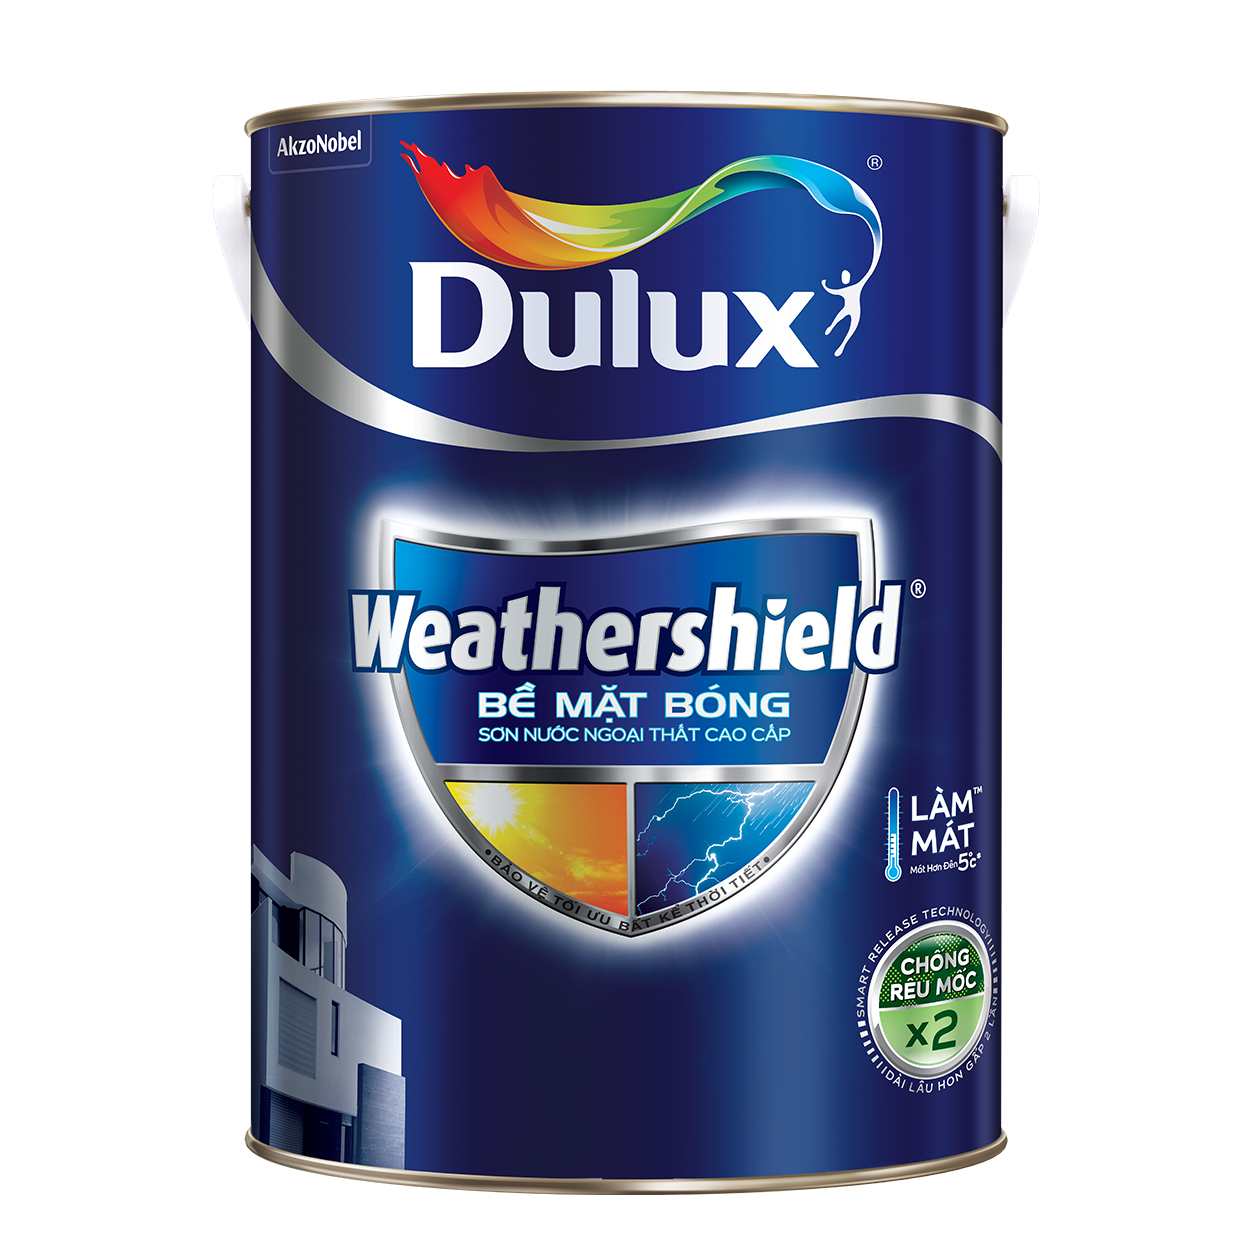 Dulux WeatherShield là dòng sơn ngoại thất cao cấp